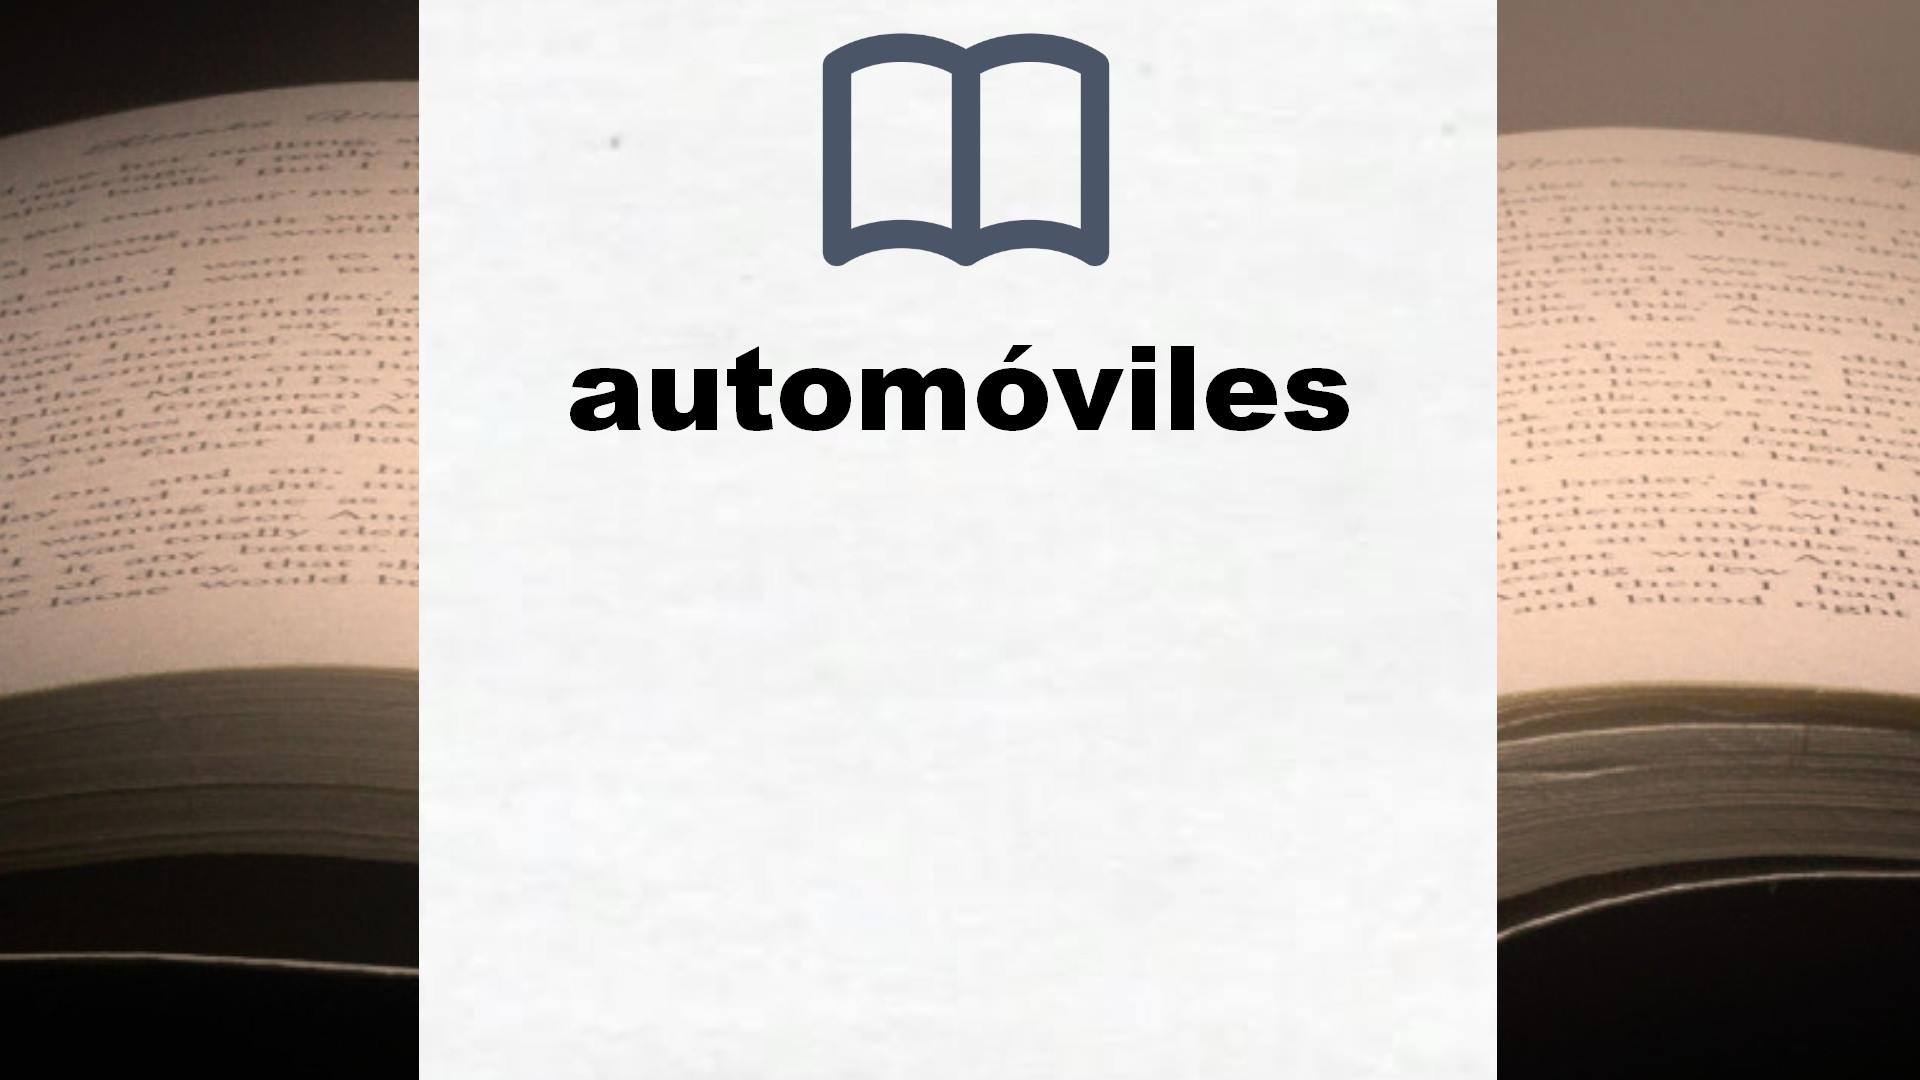 Libros sobre automóviles